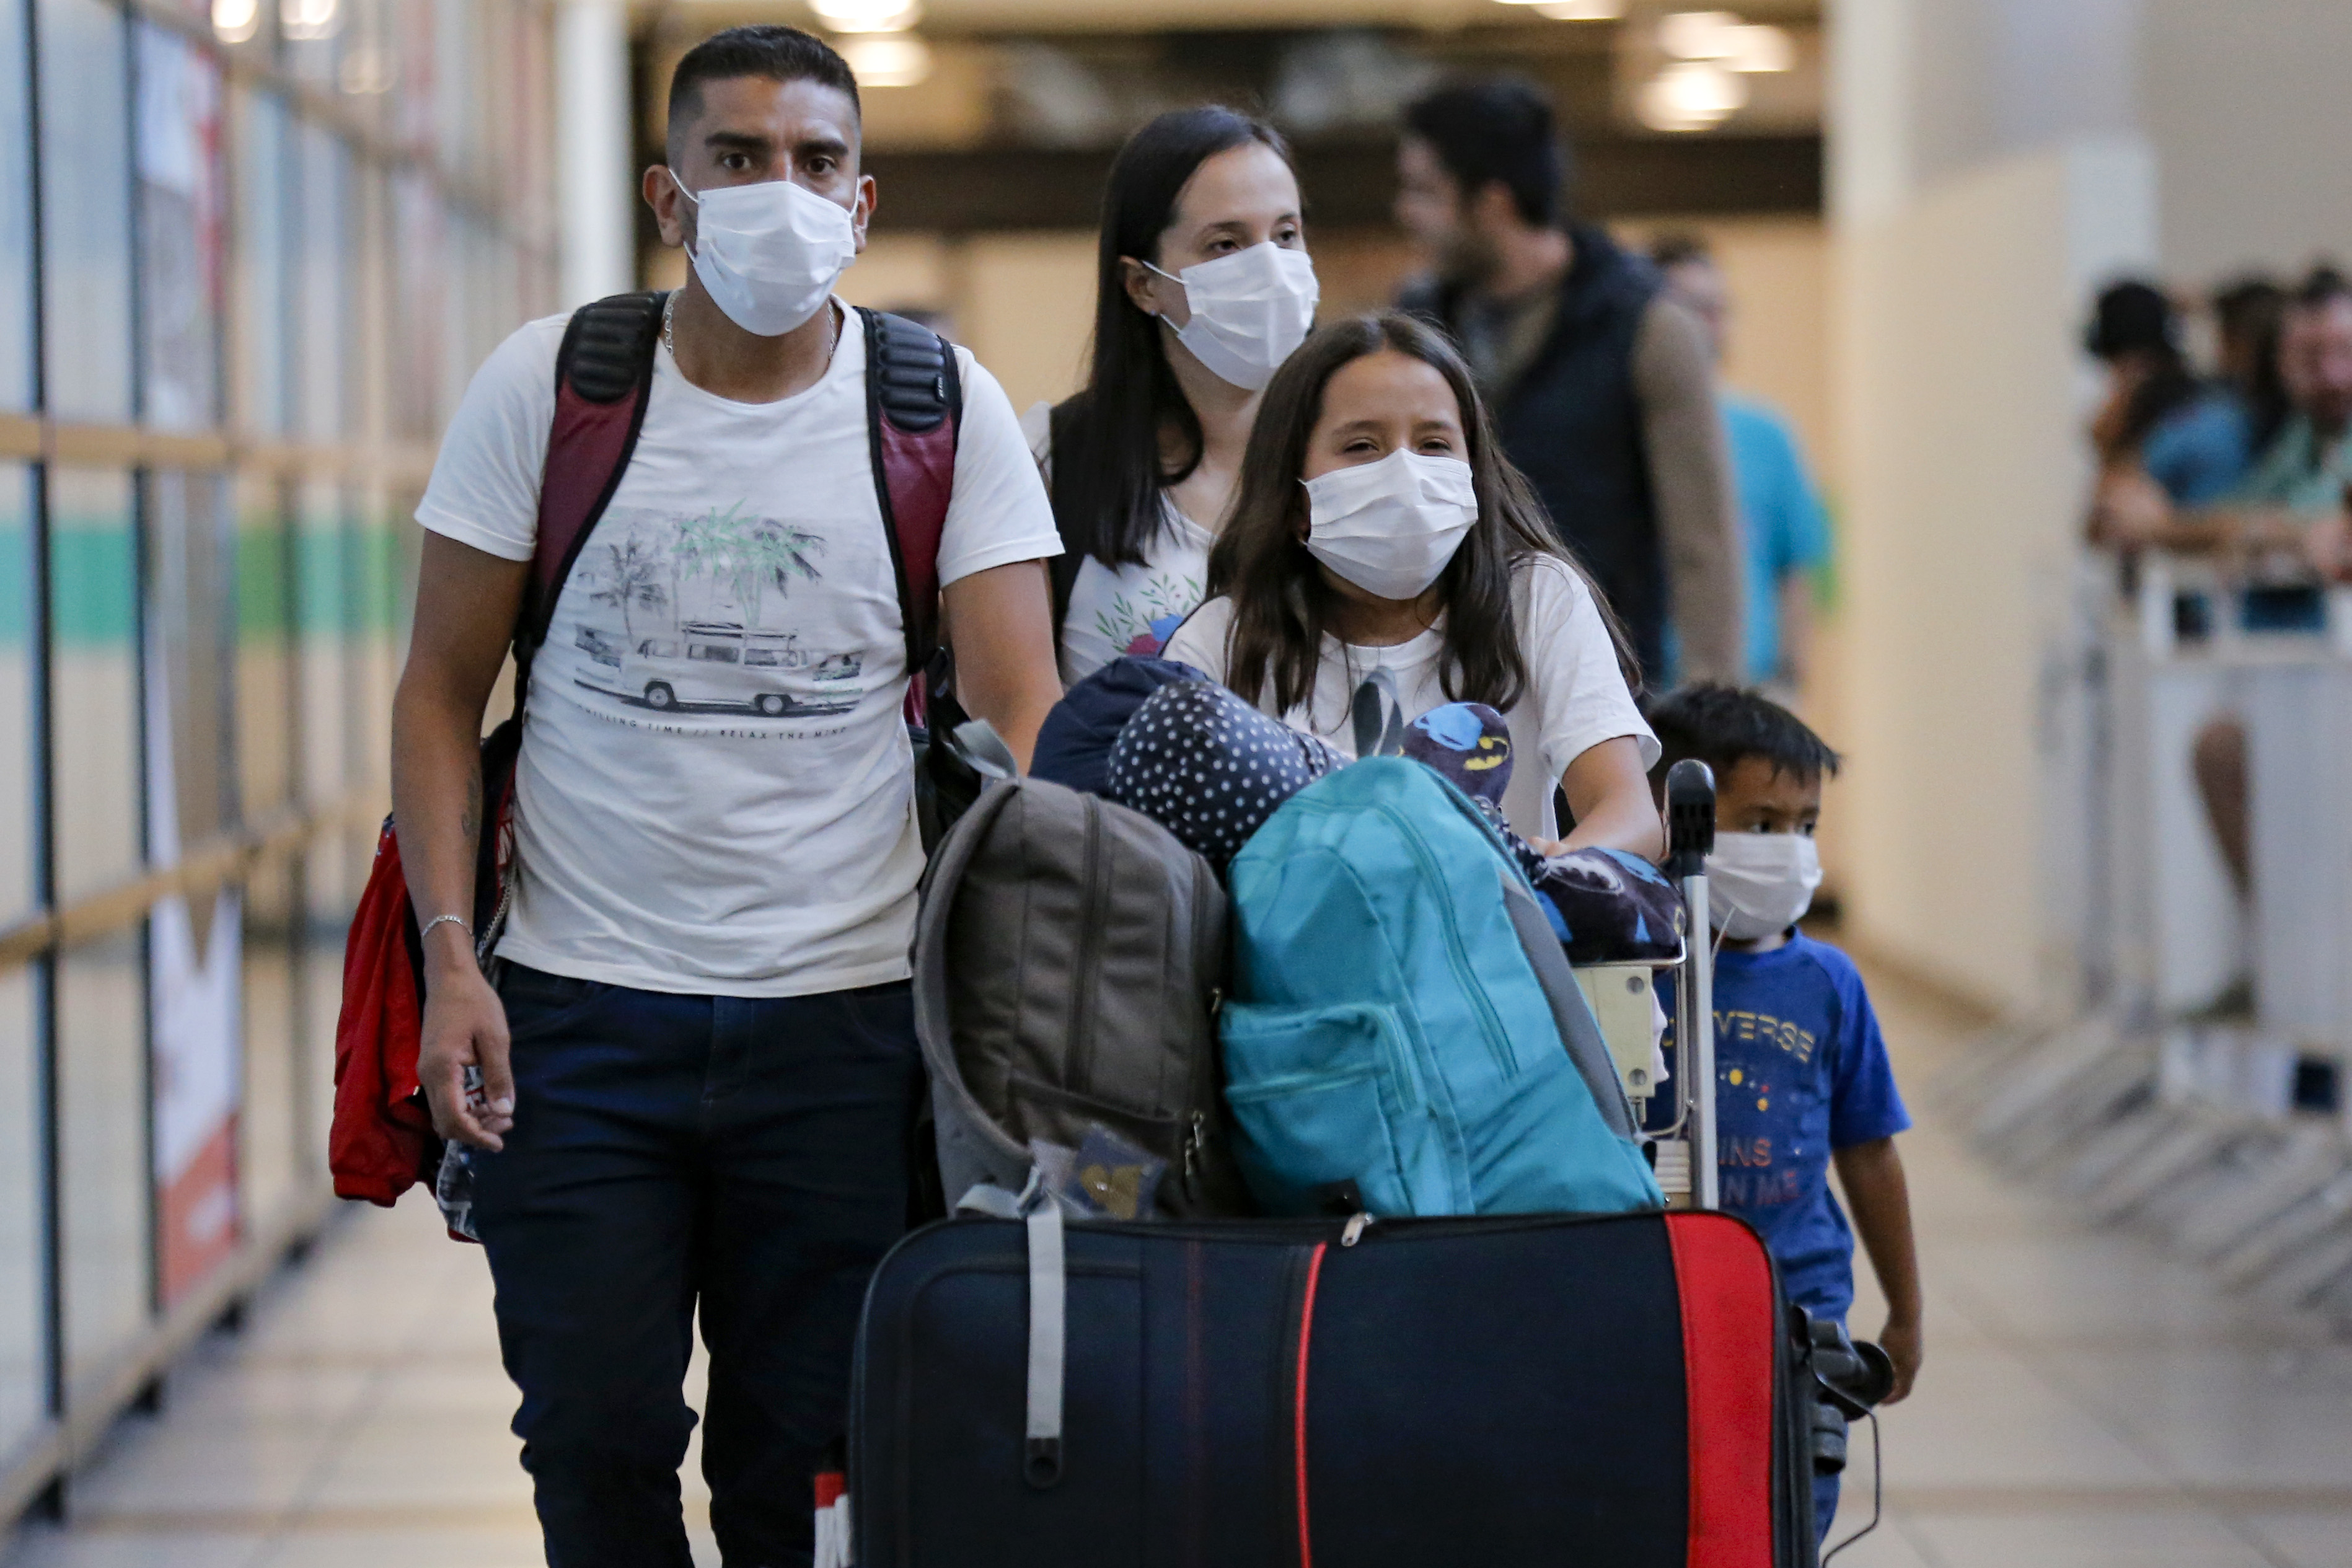 Pandemia preocupa en el norte de Chile mientras sur y centro se estabilizan